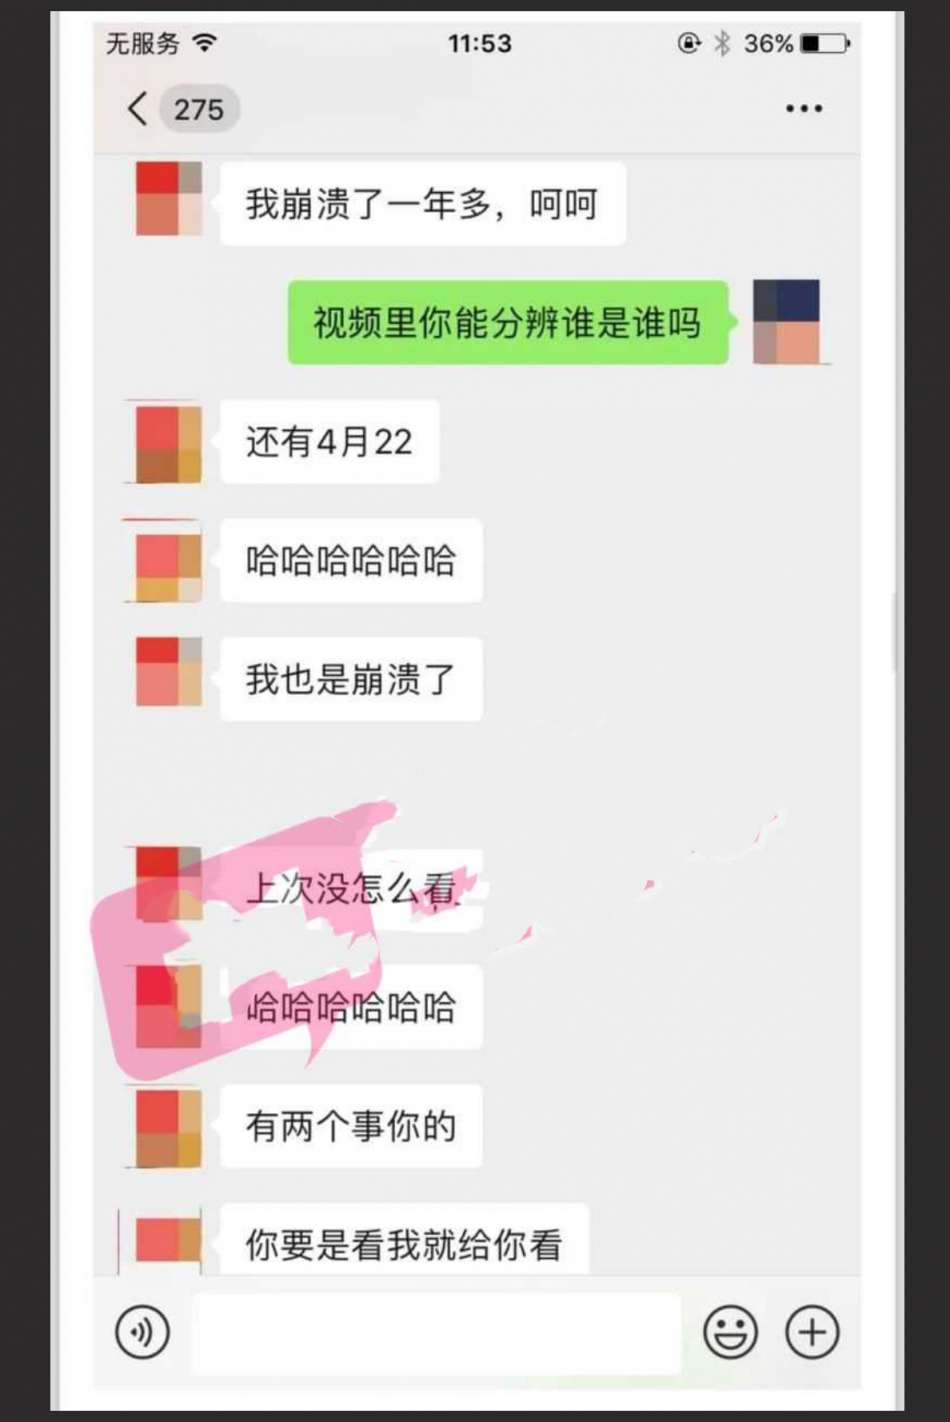 武汉理工大学已婚教授 张逸石 偷拍30G女性视频 偷拍视频遭全网疯传！